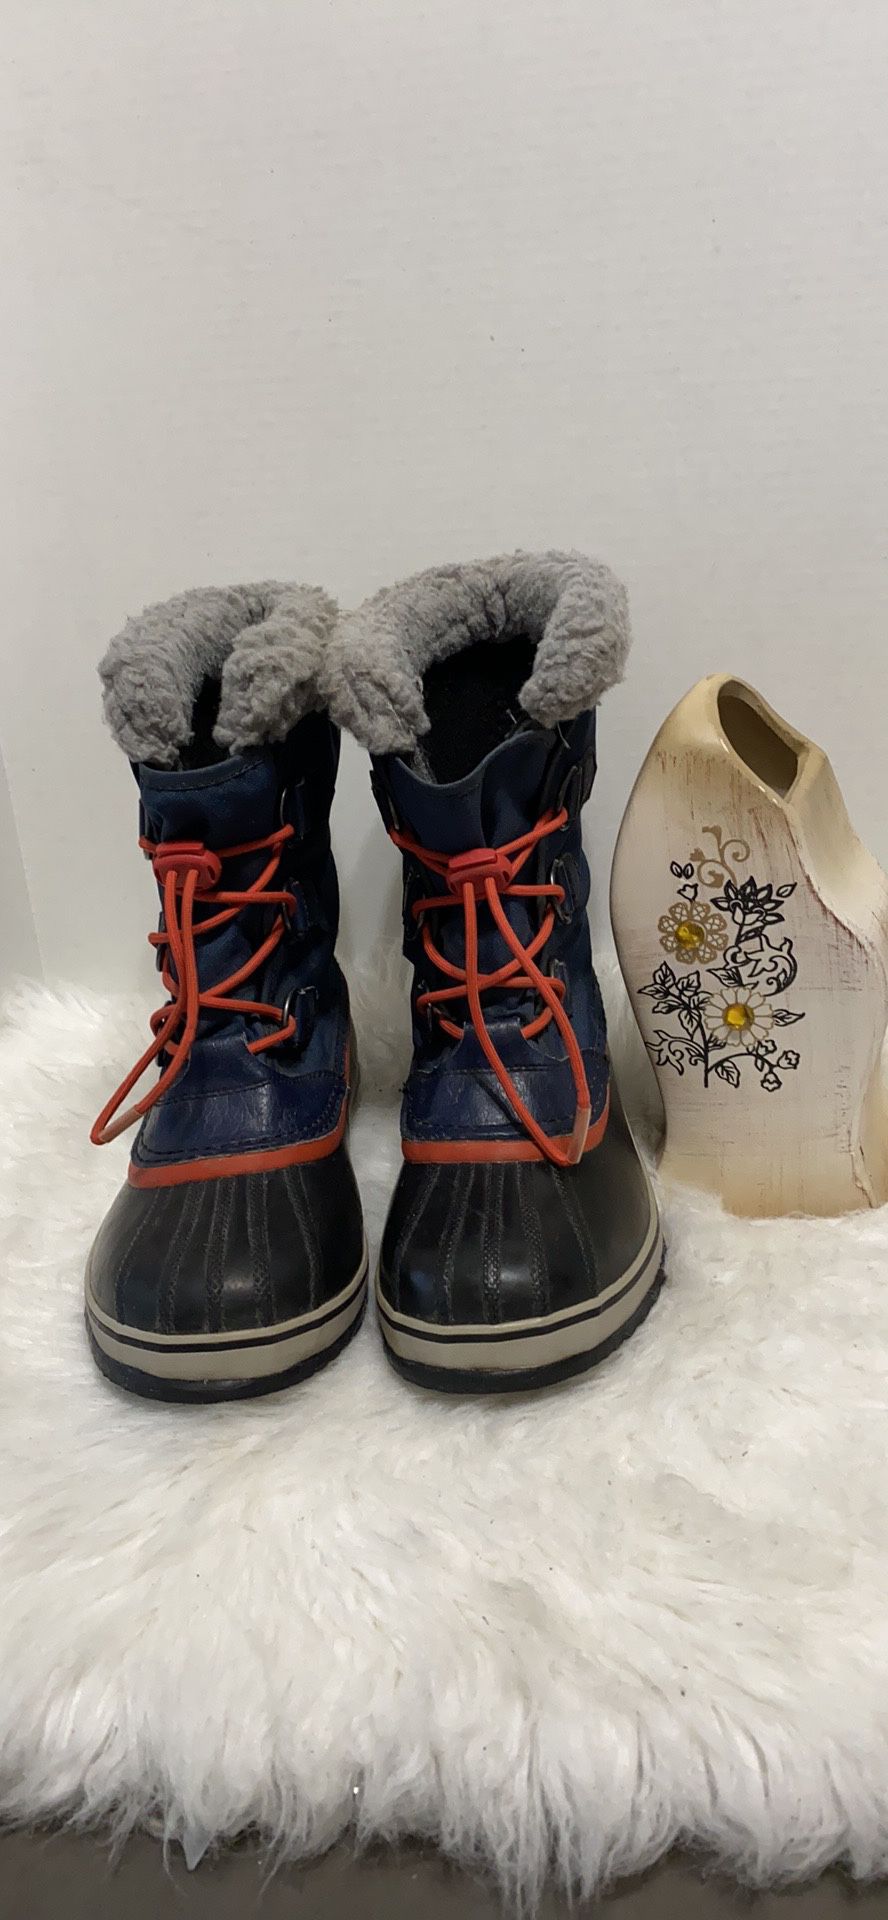 Sorel Waterproof Winter Snow Boots size 6 youth women 8